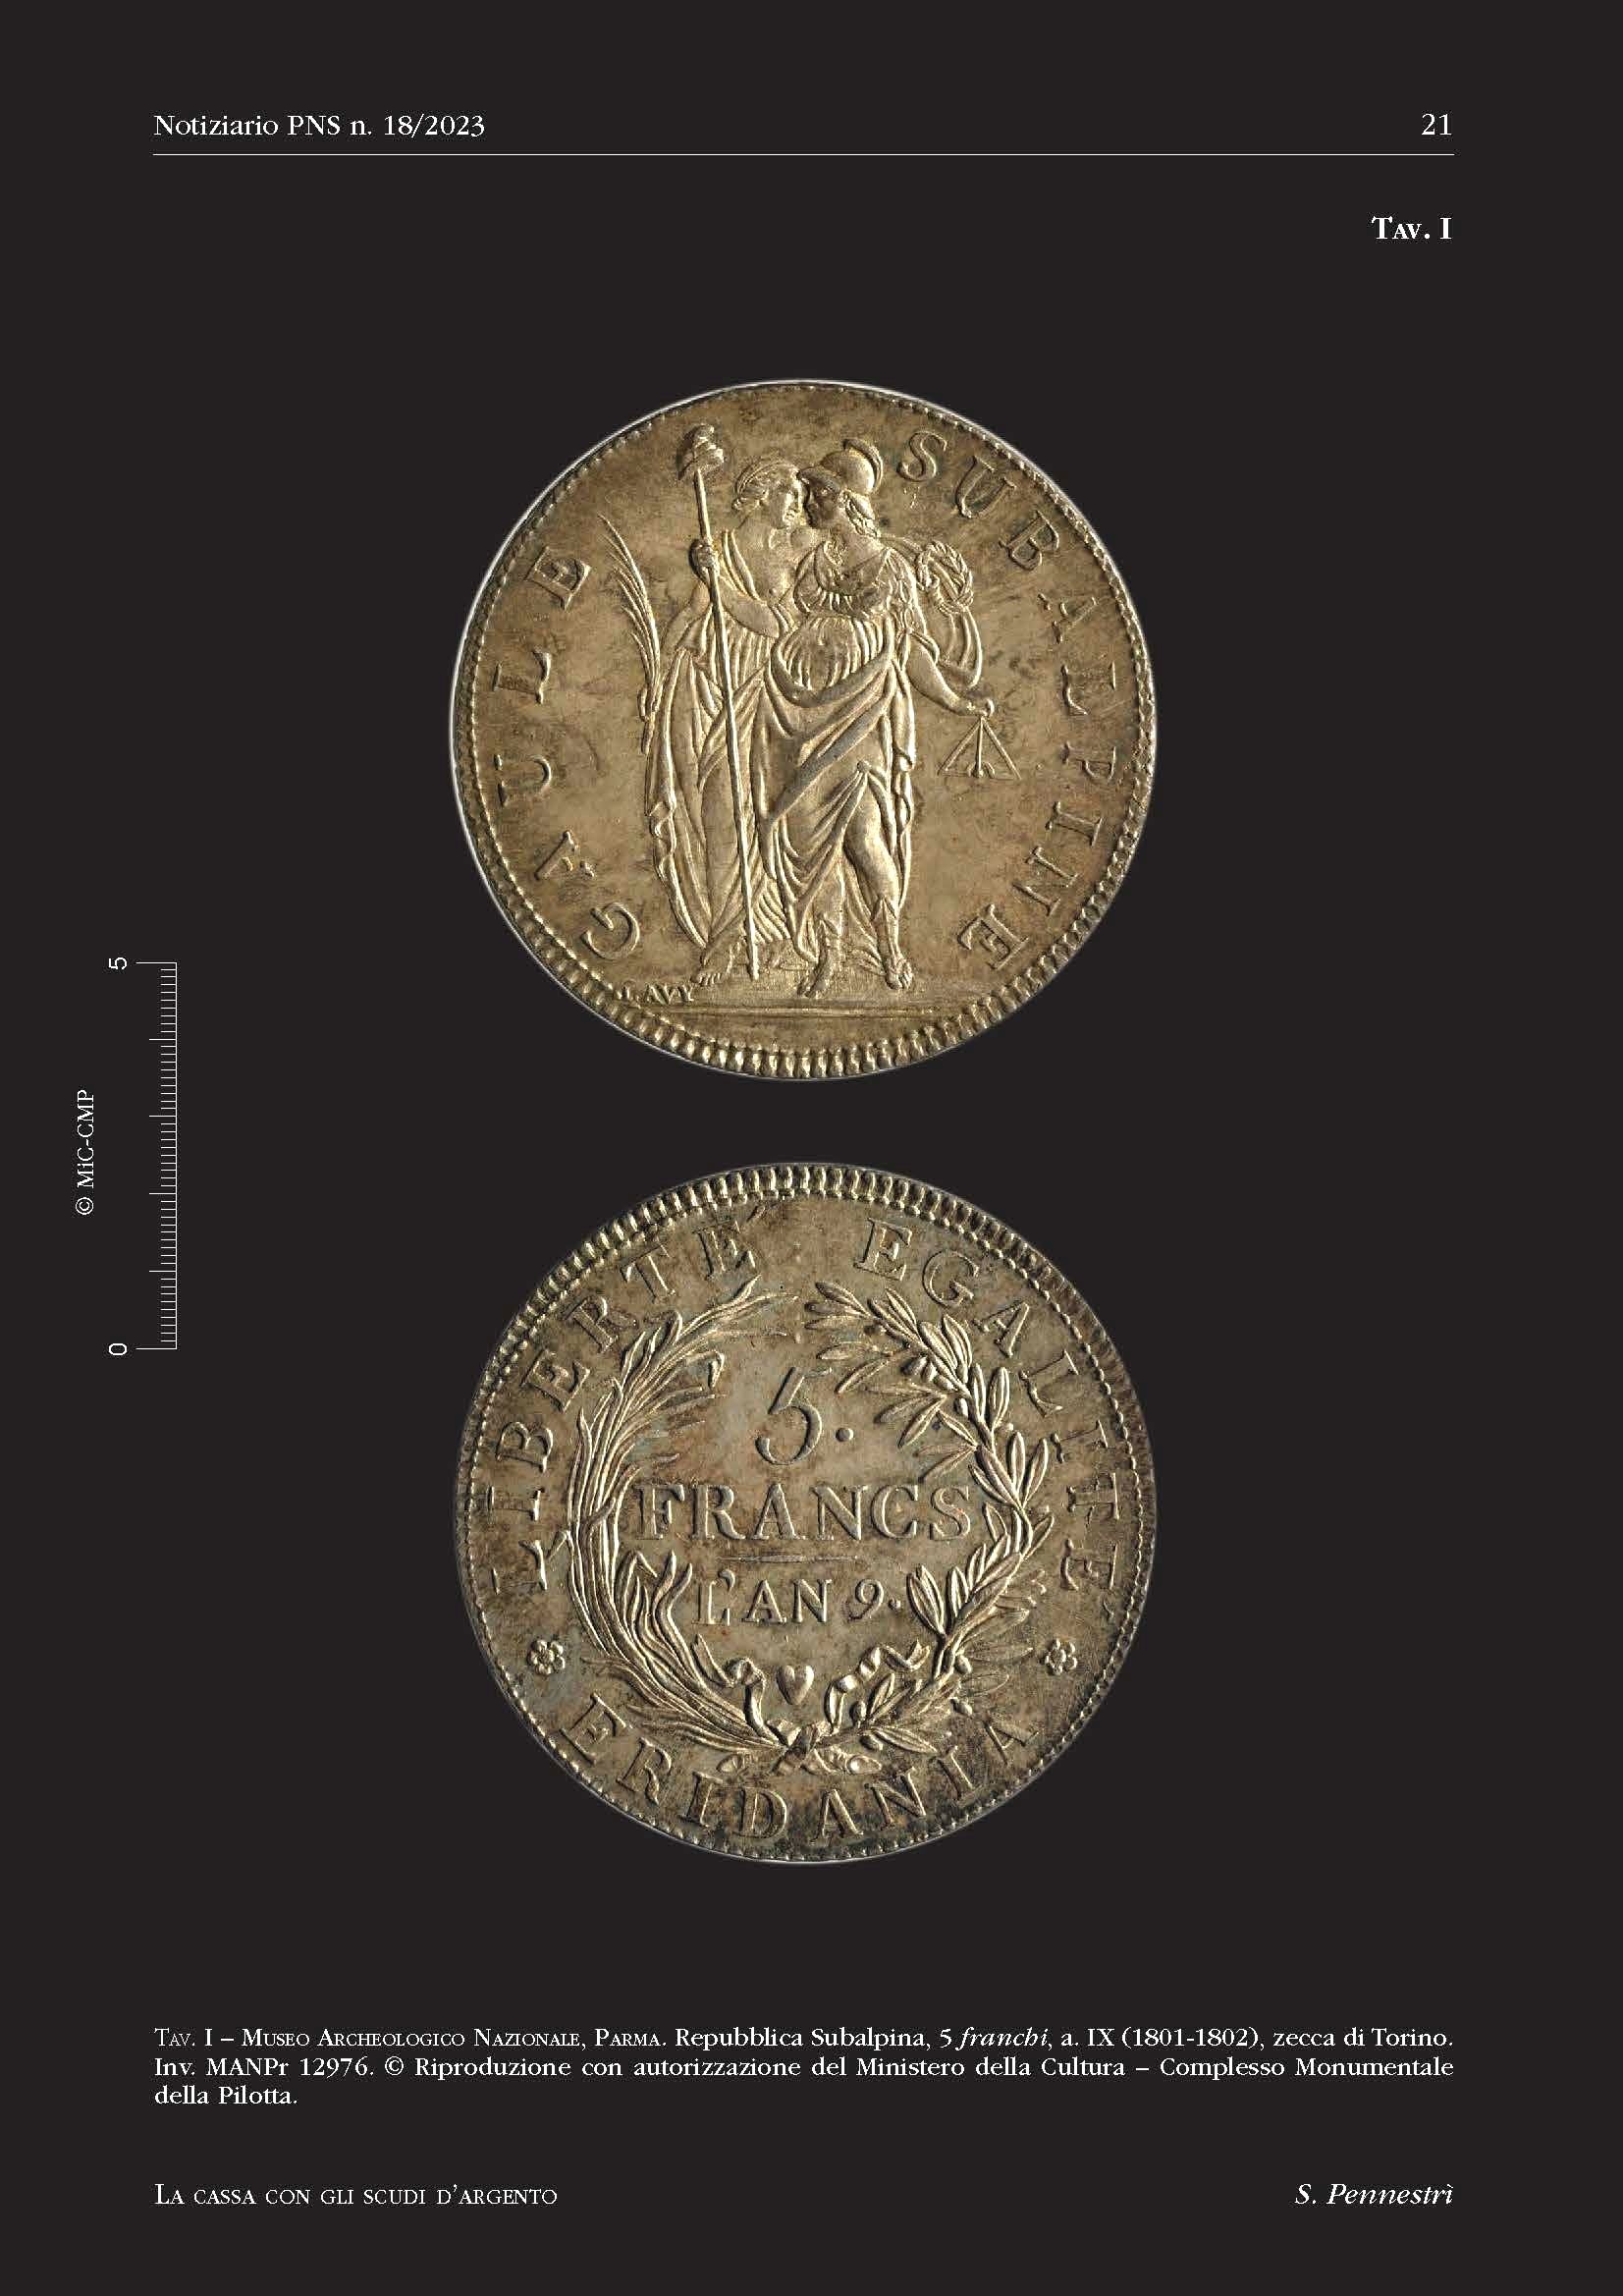 tracce di metallo beni svelati tesoreria dello stato banca d'italia monete medaglie onorificenze oro mussolini scudi